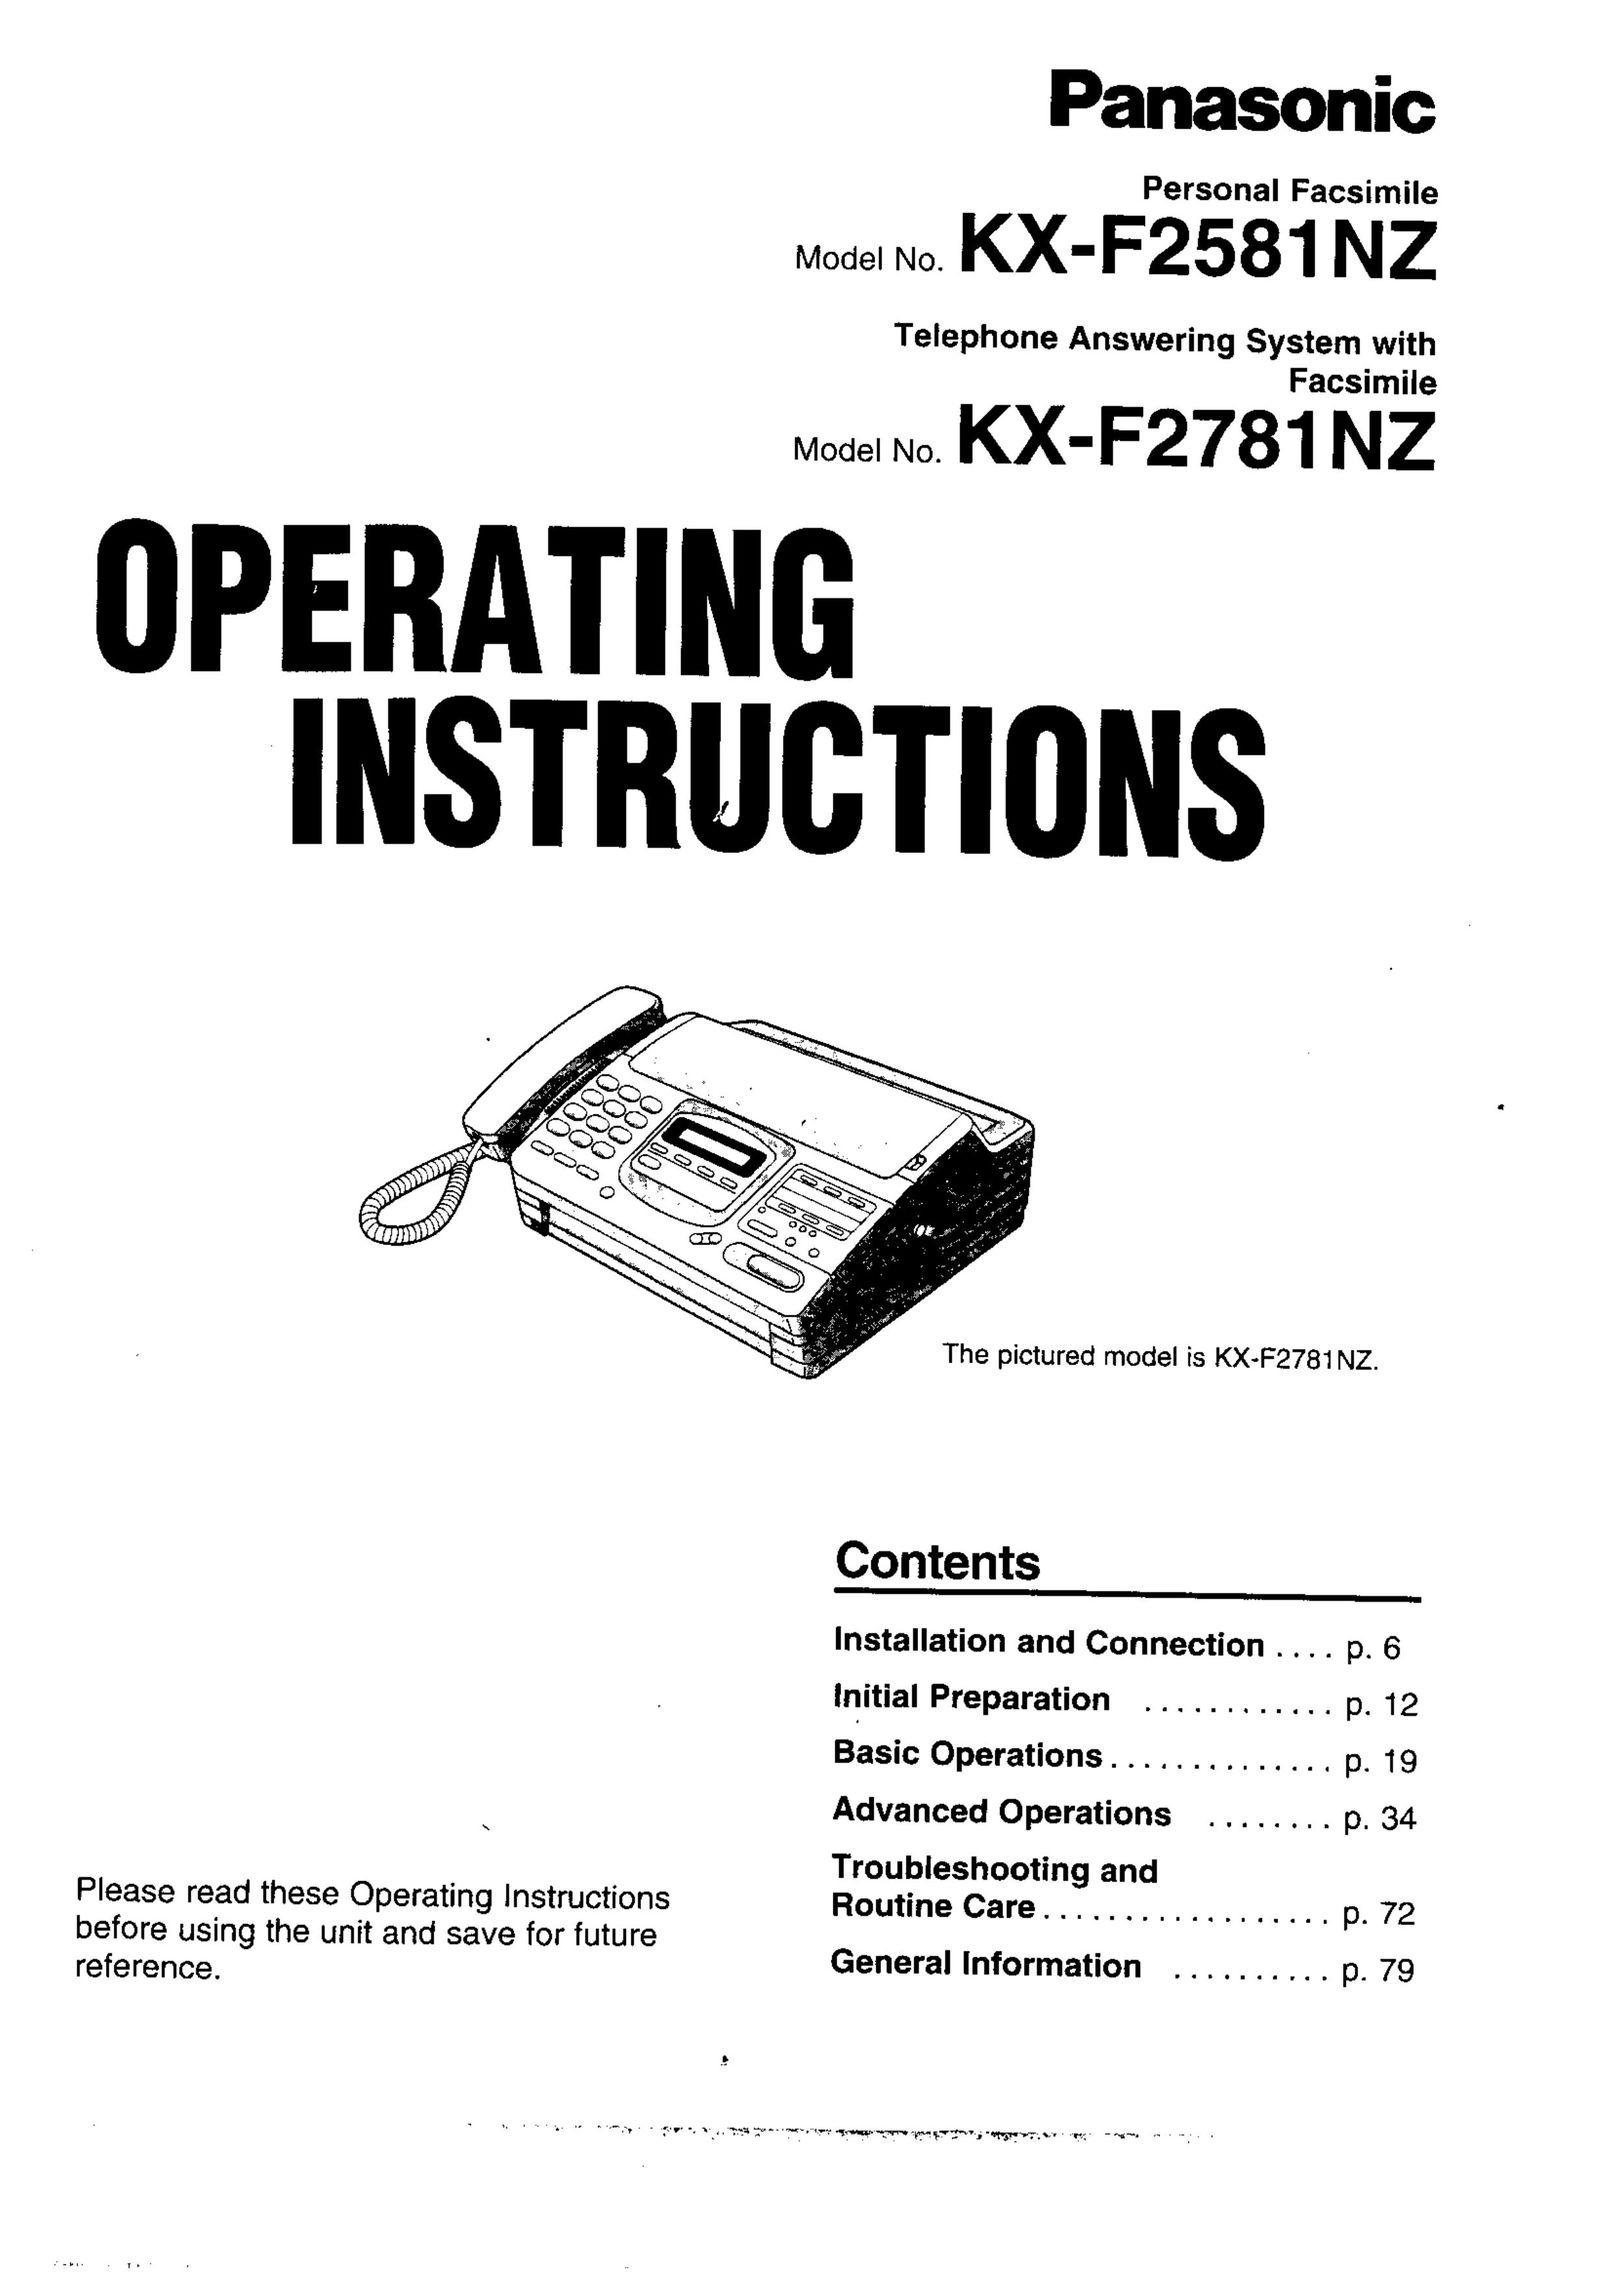 Panasonic KX-F2581NZ Fax Machine User Manual